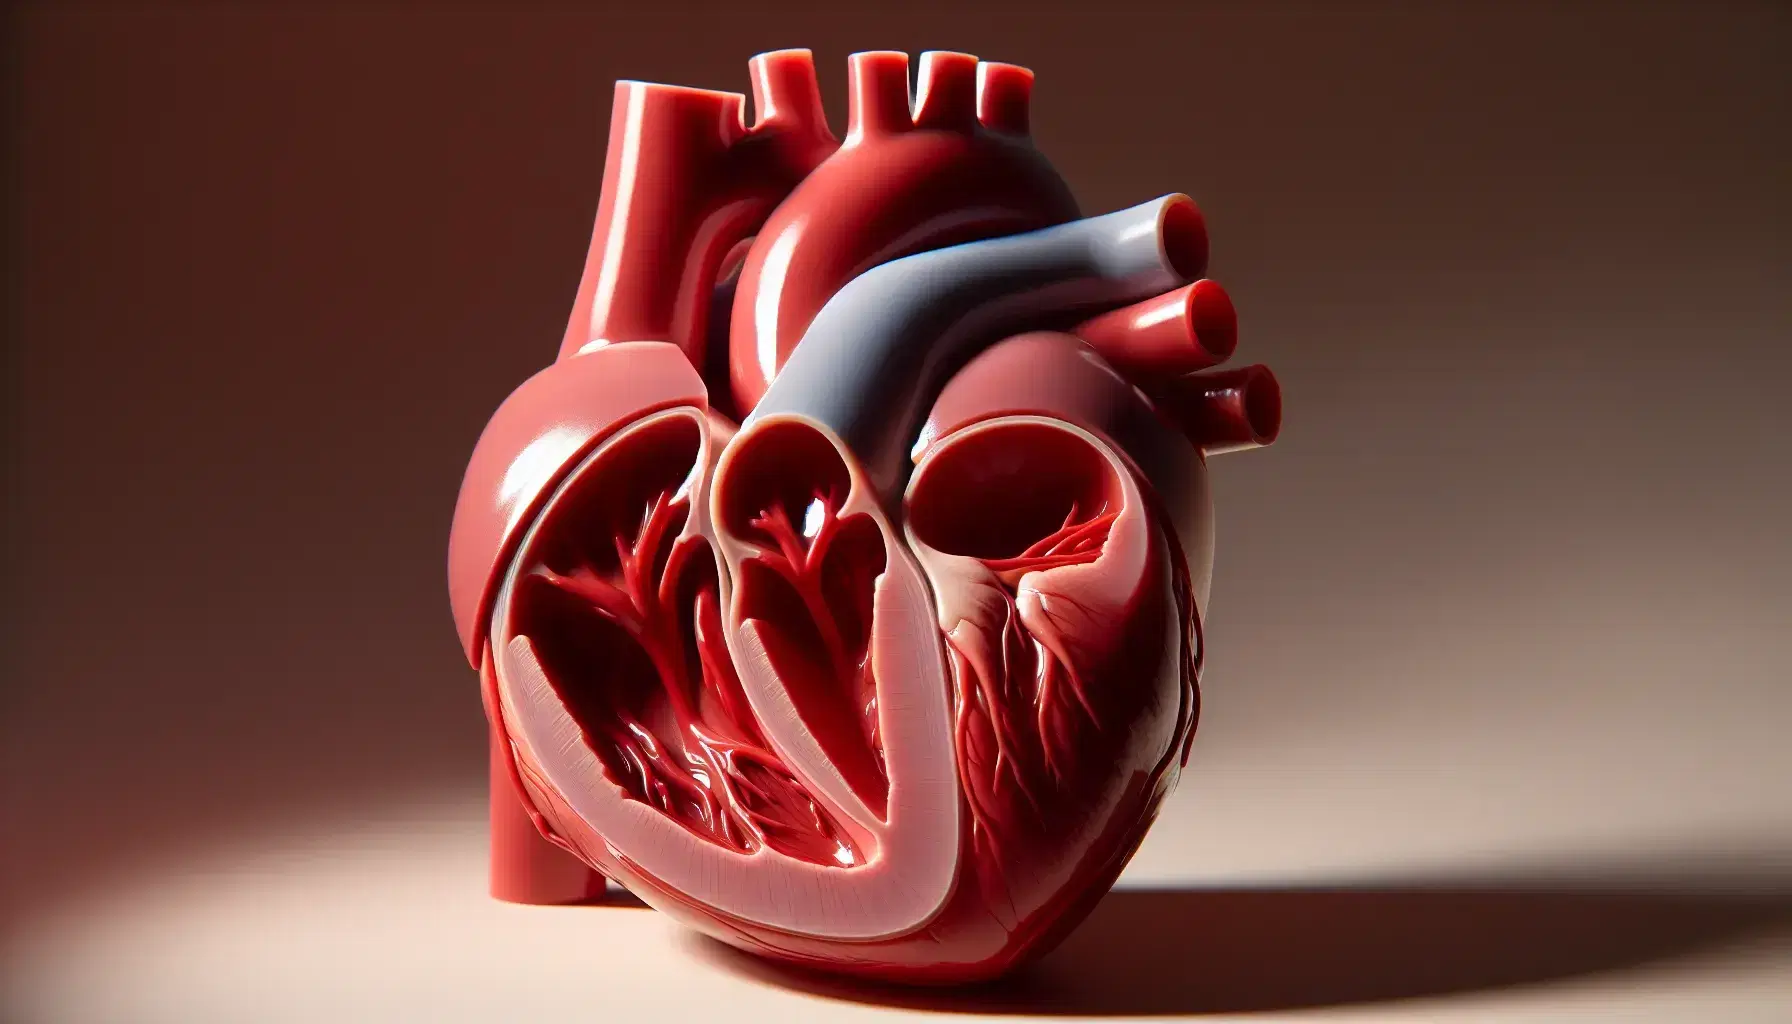 Modelo anatómico detallado del corazón humano seccionado mostrando cámaras internas, ventrículos y válvulas en fondo neutro.